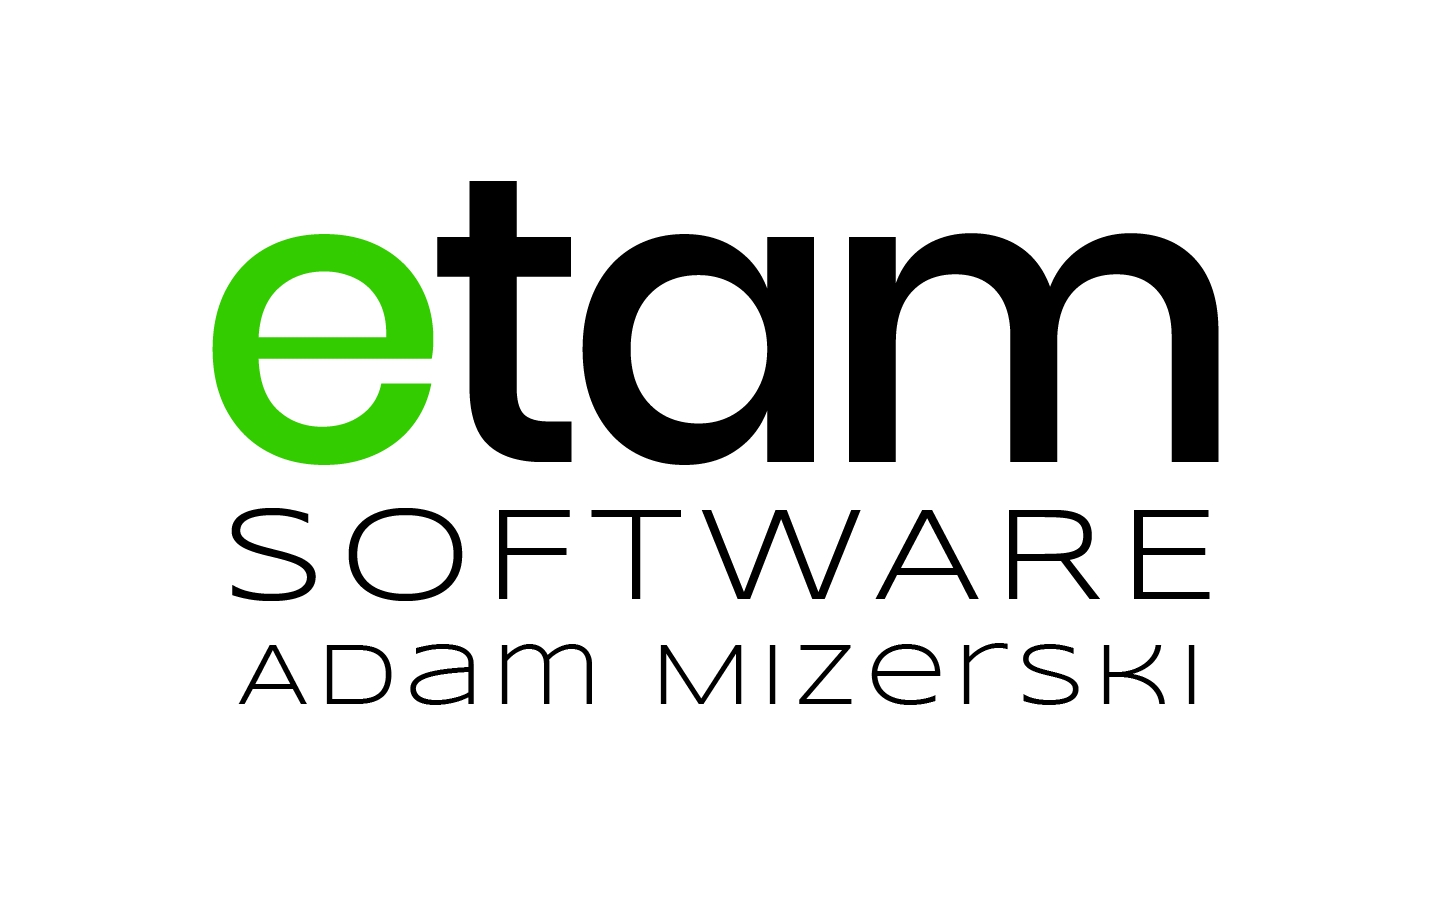 Etam Software - Adam Mizerski logo